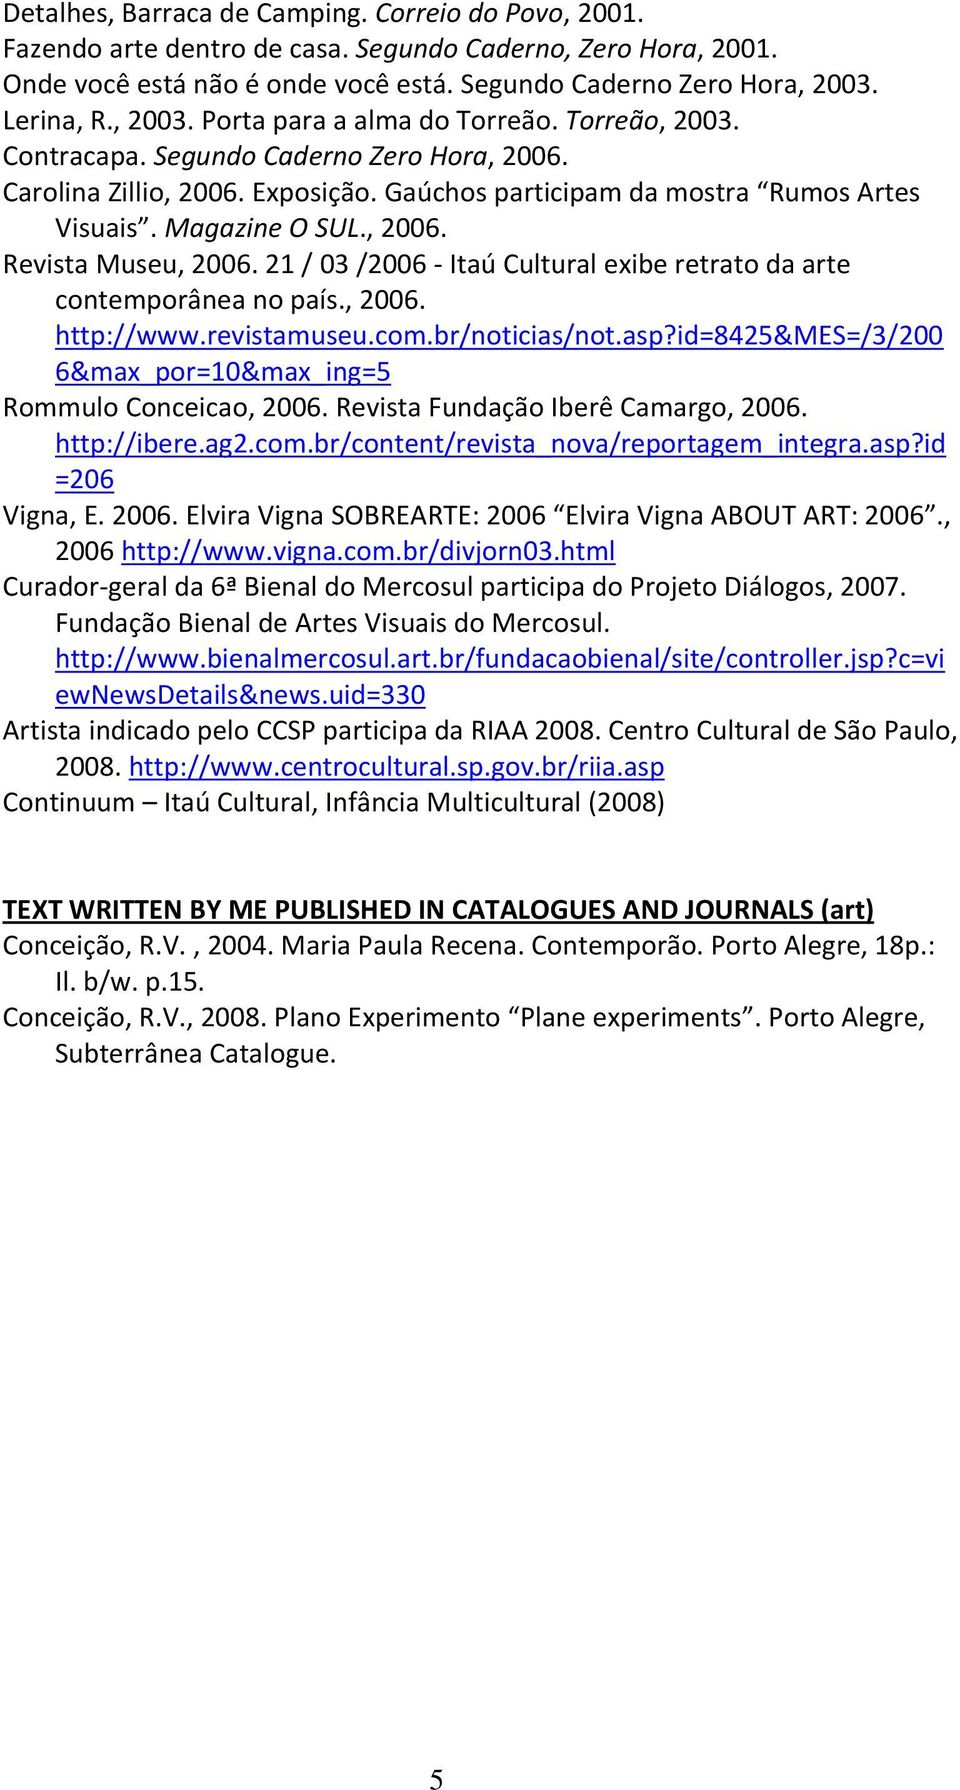 , 2006. Revista Museu, 2006. 21 / 03 /2006 Itaú Cultural exibe retrato da arte contemporânea no país., 2006. http://www.revistamuseu.com.br/noticias/not.asp?